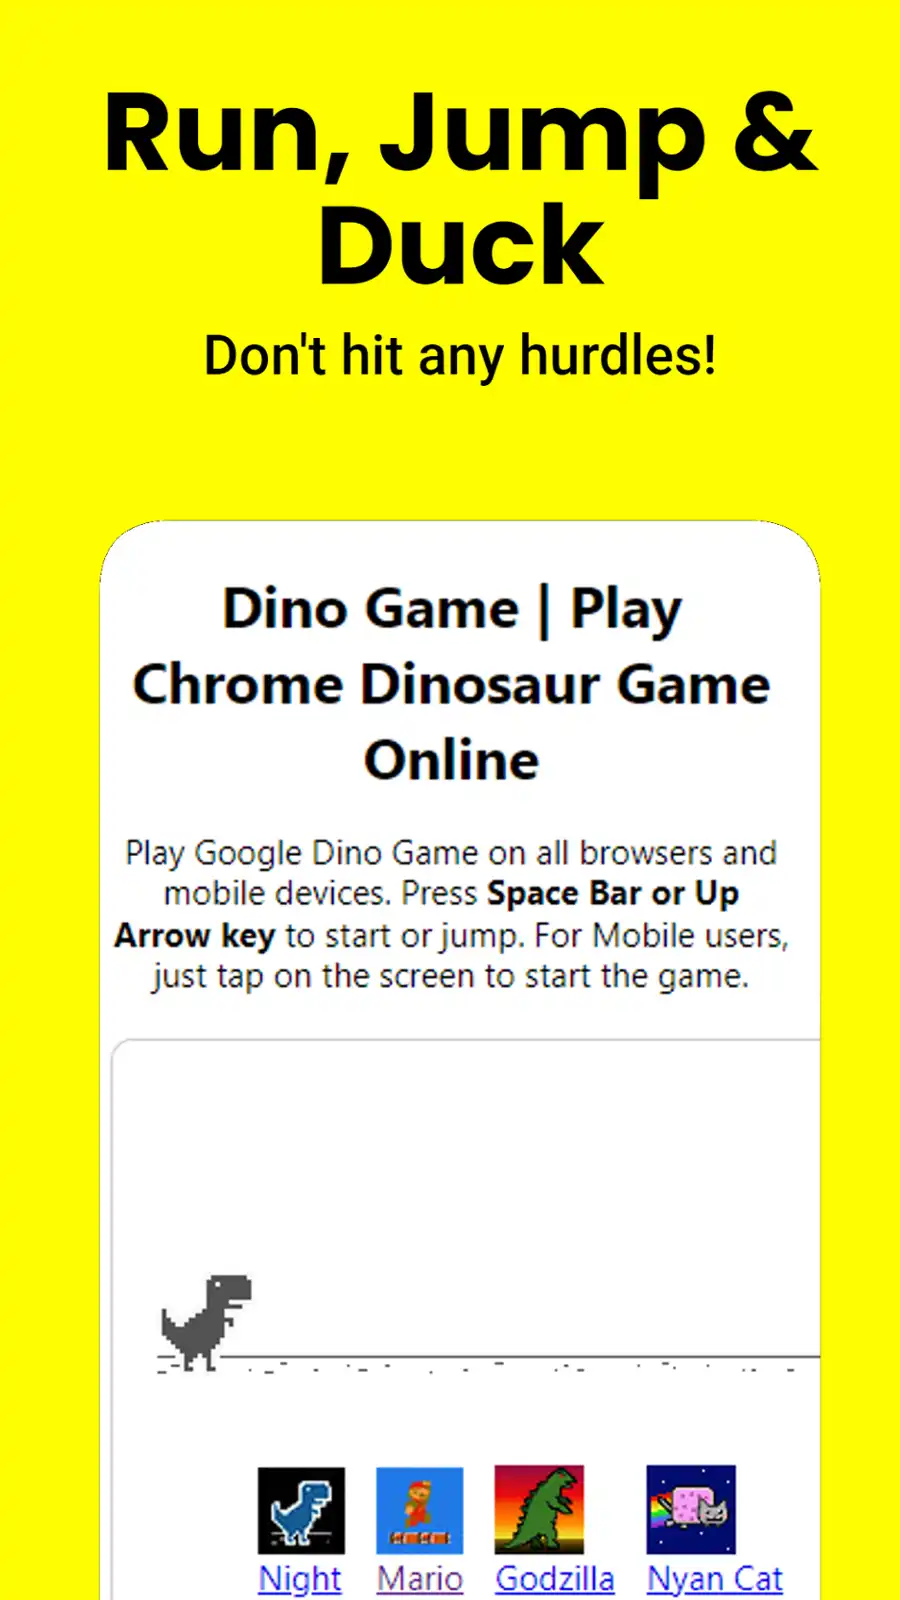 Tải xuống công cụ web hoặc ứng dụng web Google Dino Game